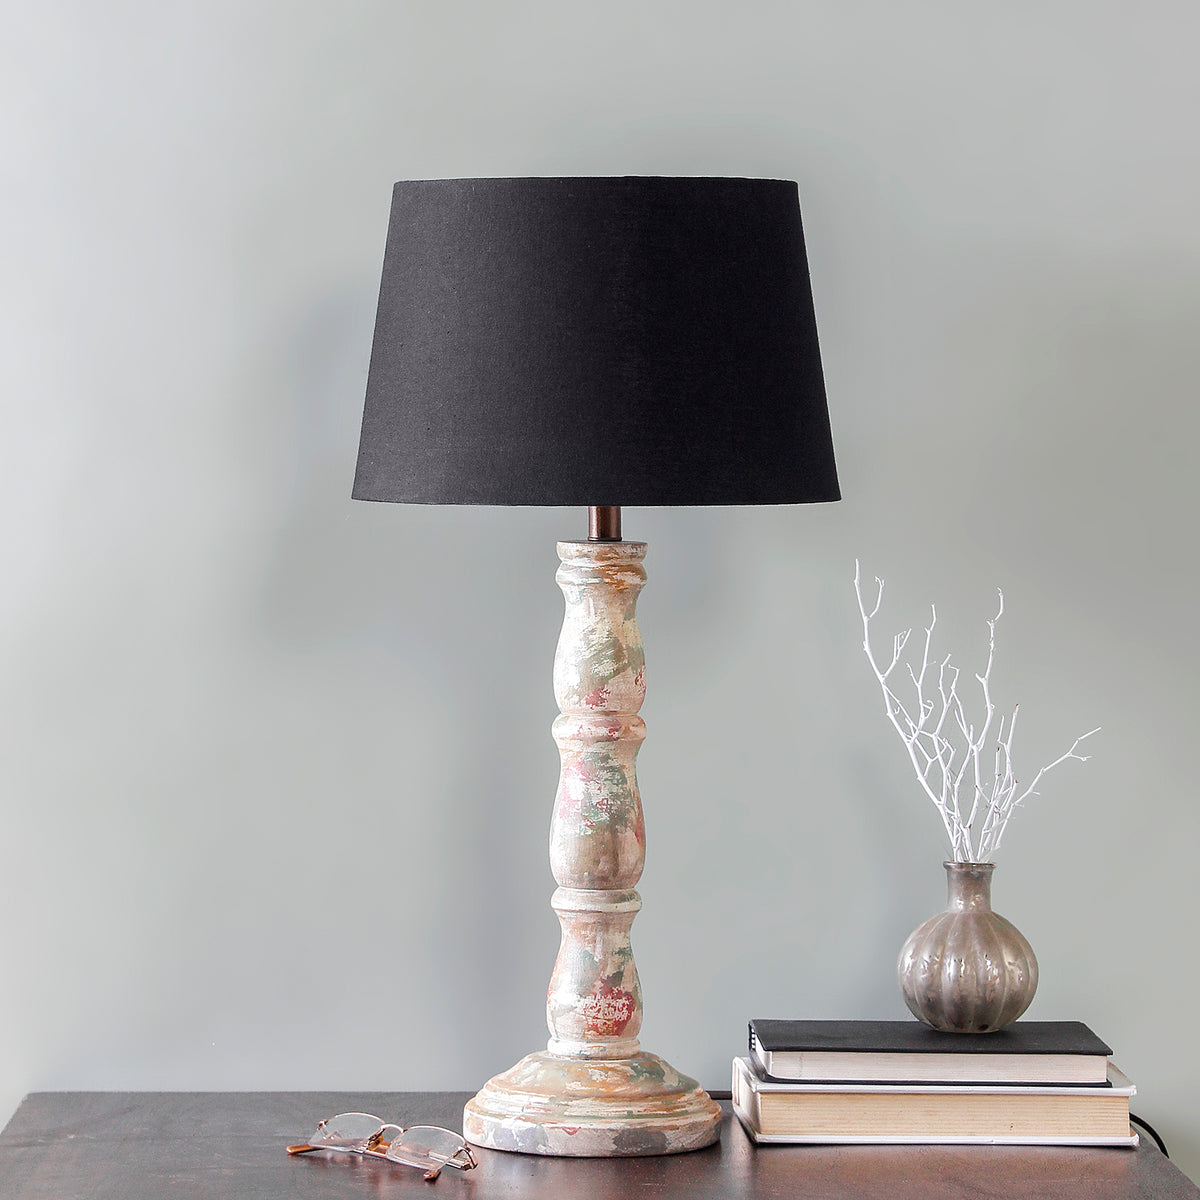 Ellie Rustic Wood Table Lamps Online